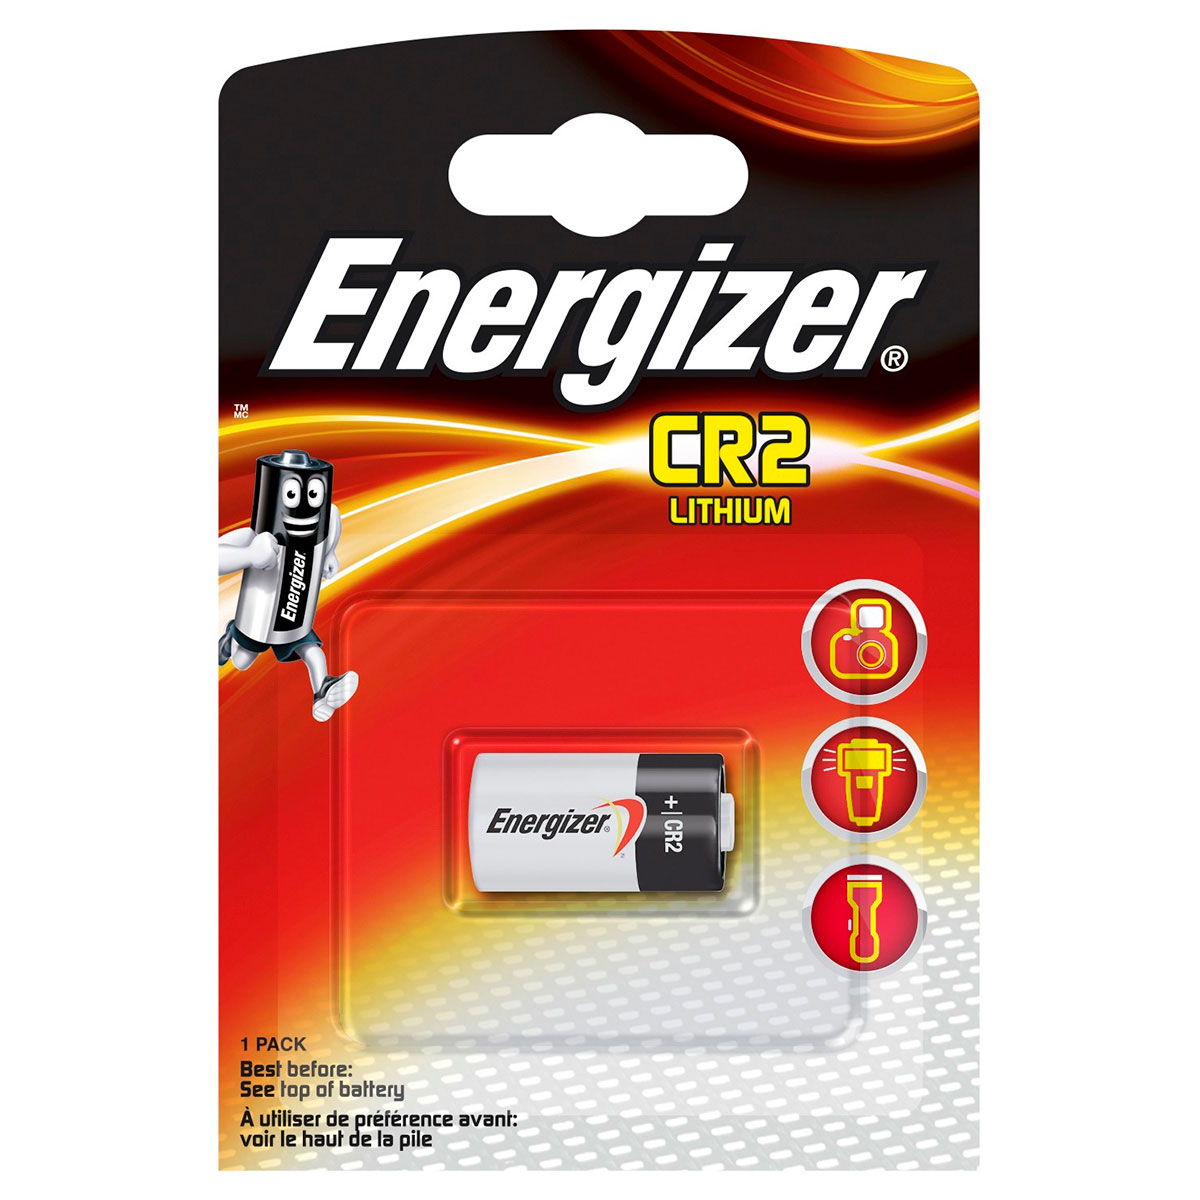 jord forseelser forsigtigt Energizer CR2 batteri 3V (Lithium)